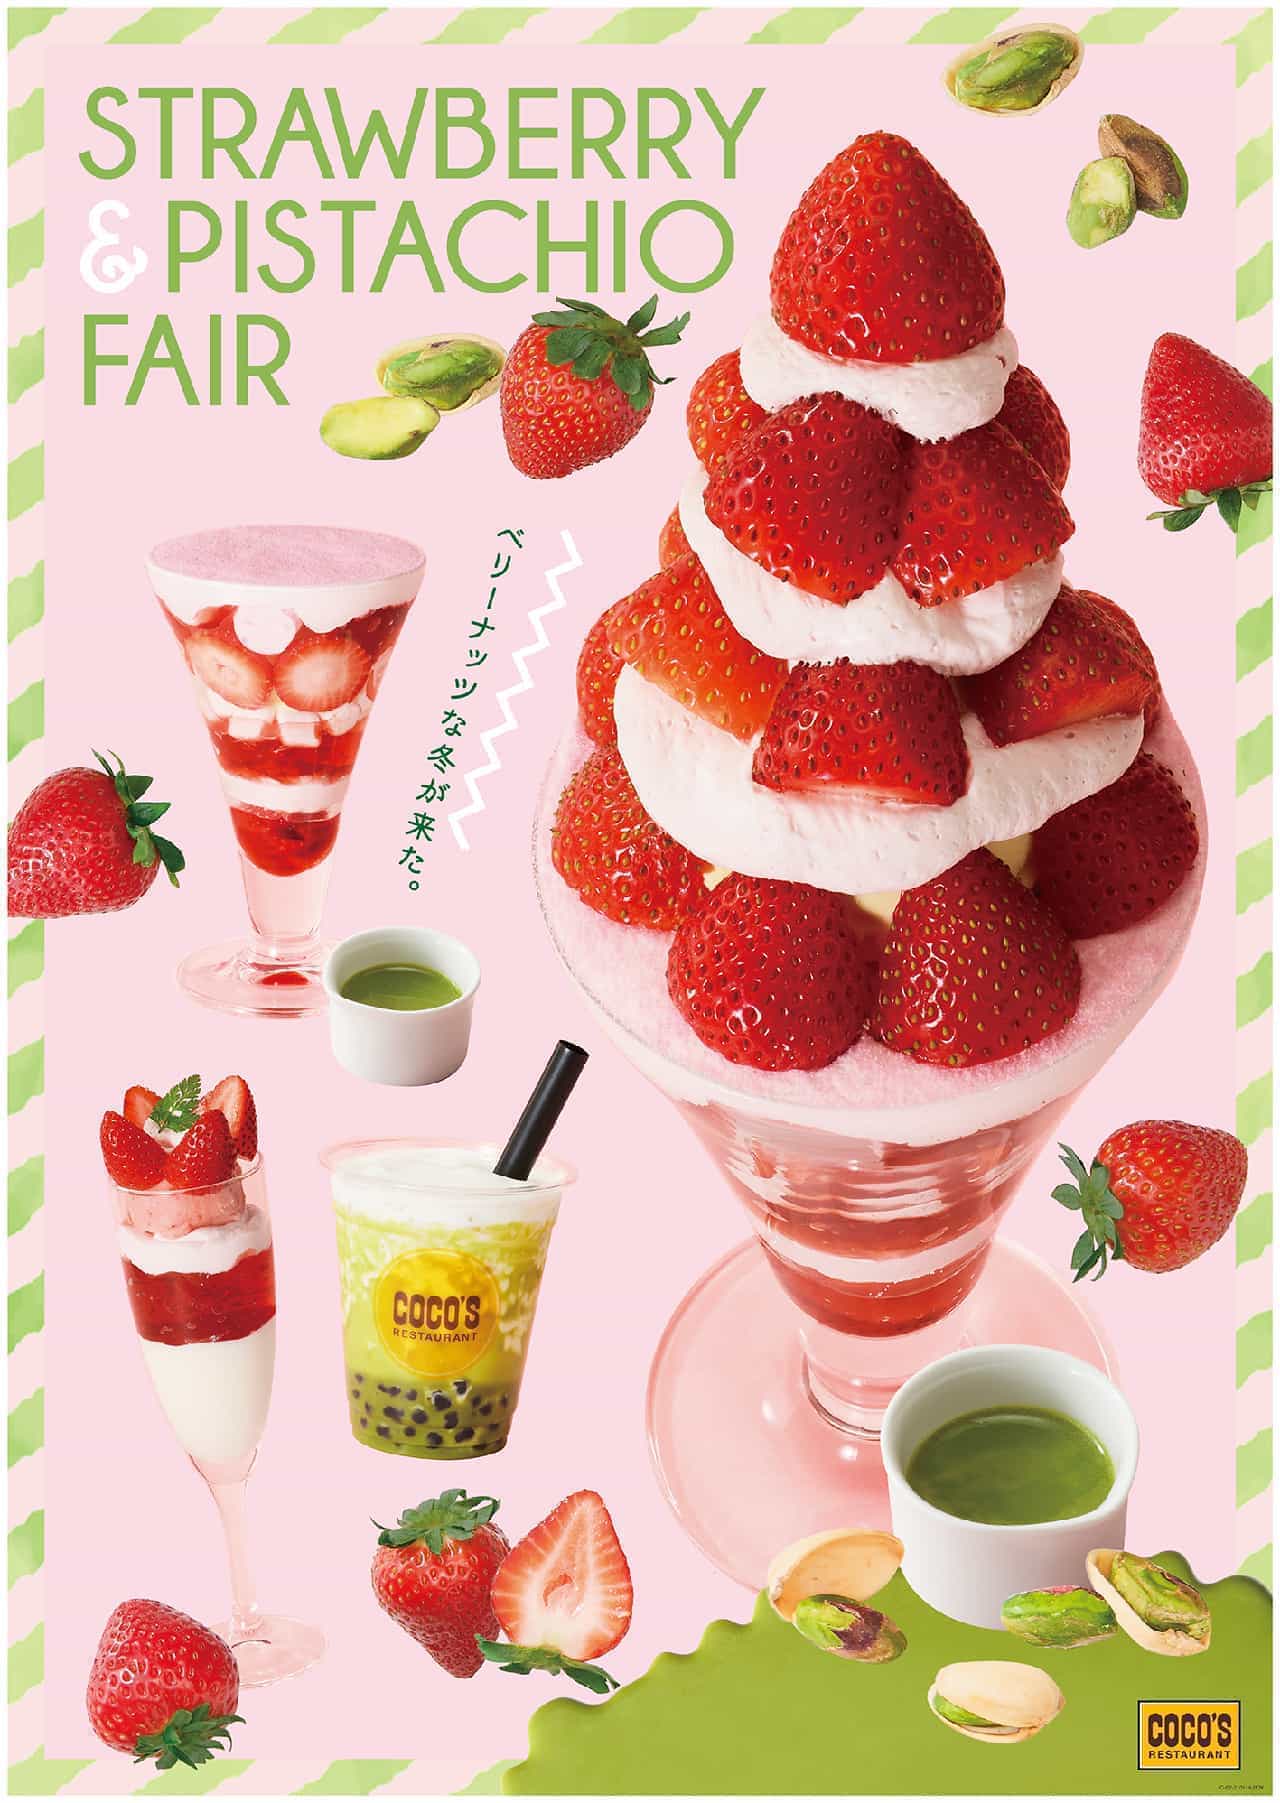 Coco's "Strawberry & Pistachio Fair"